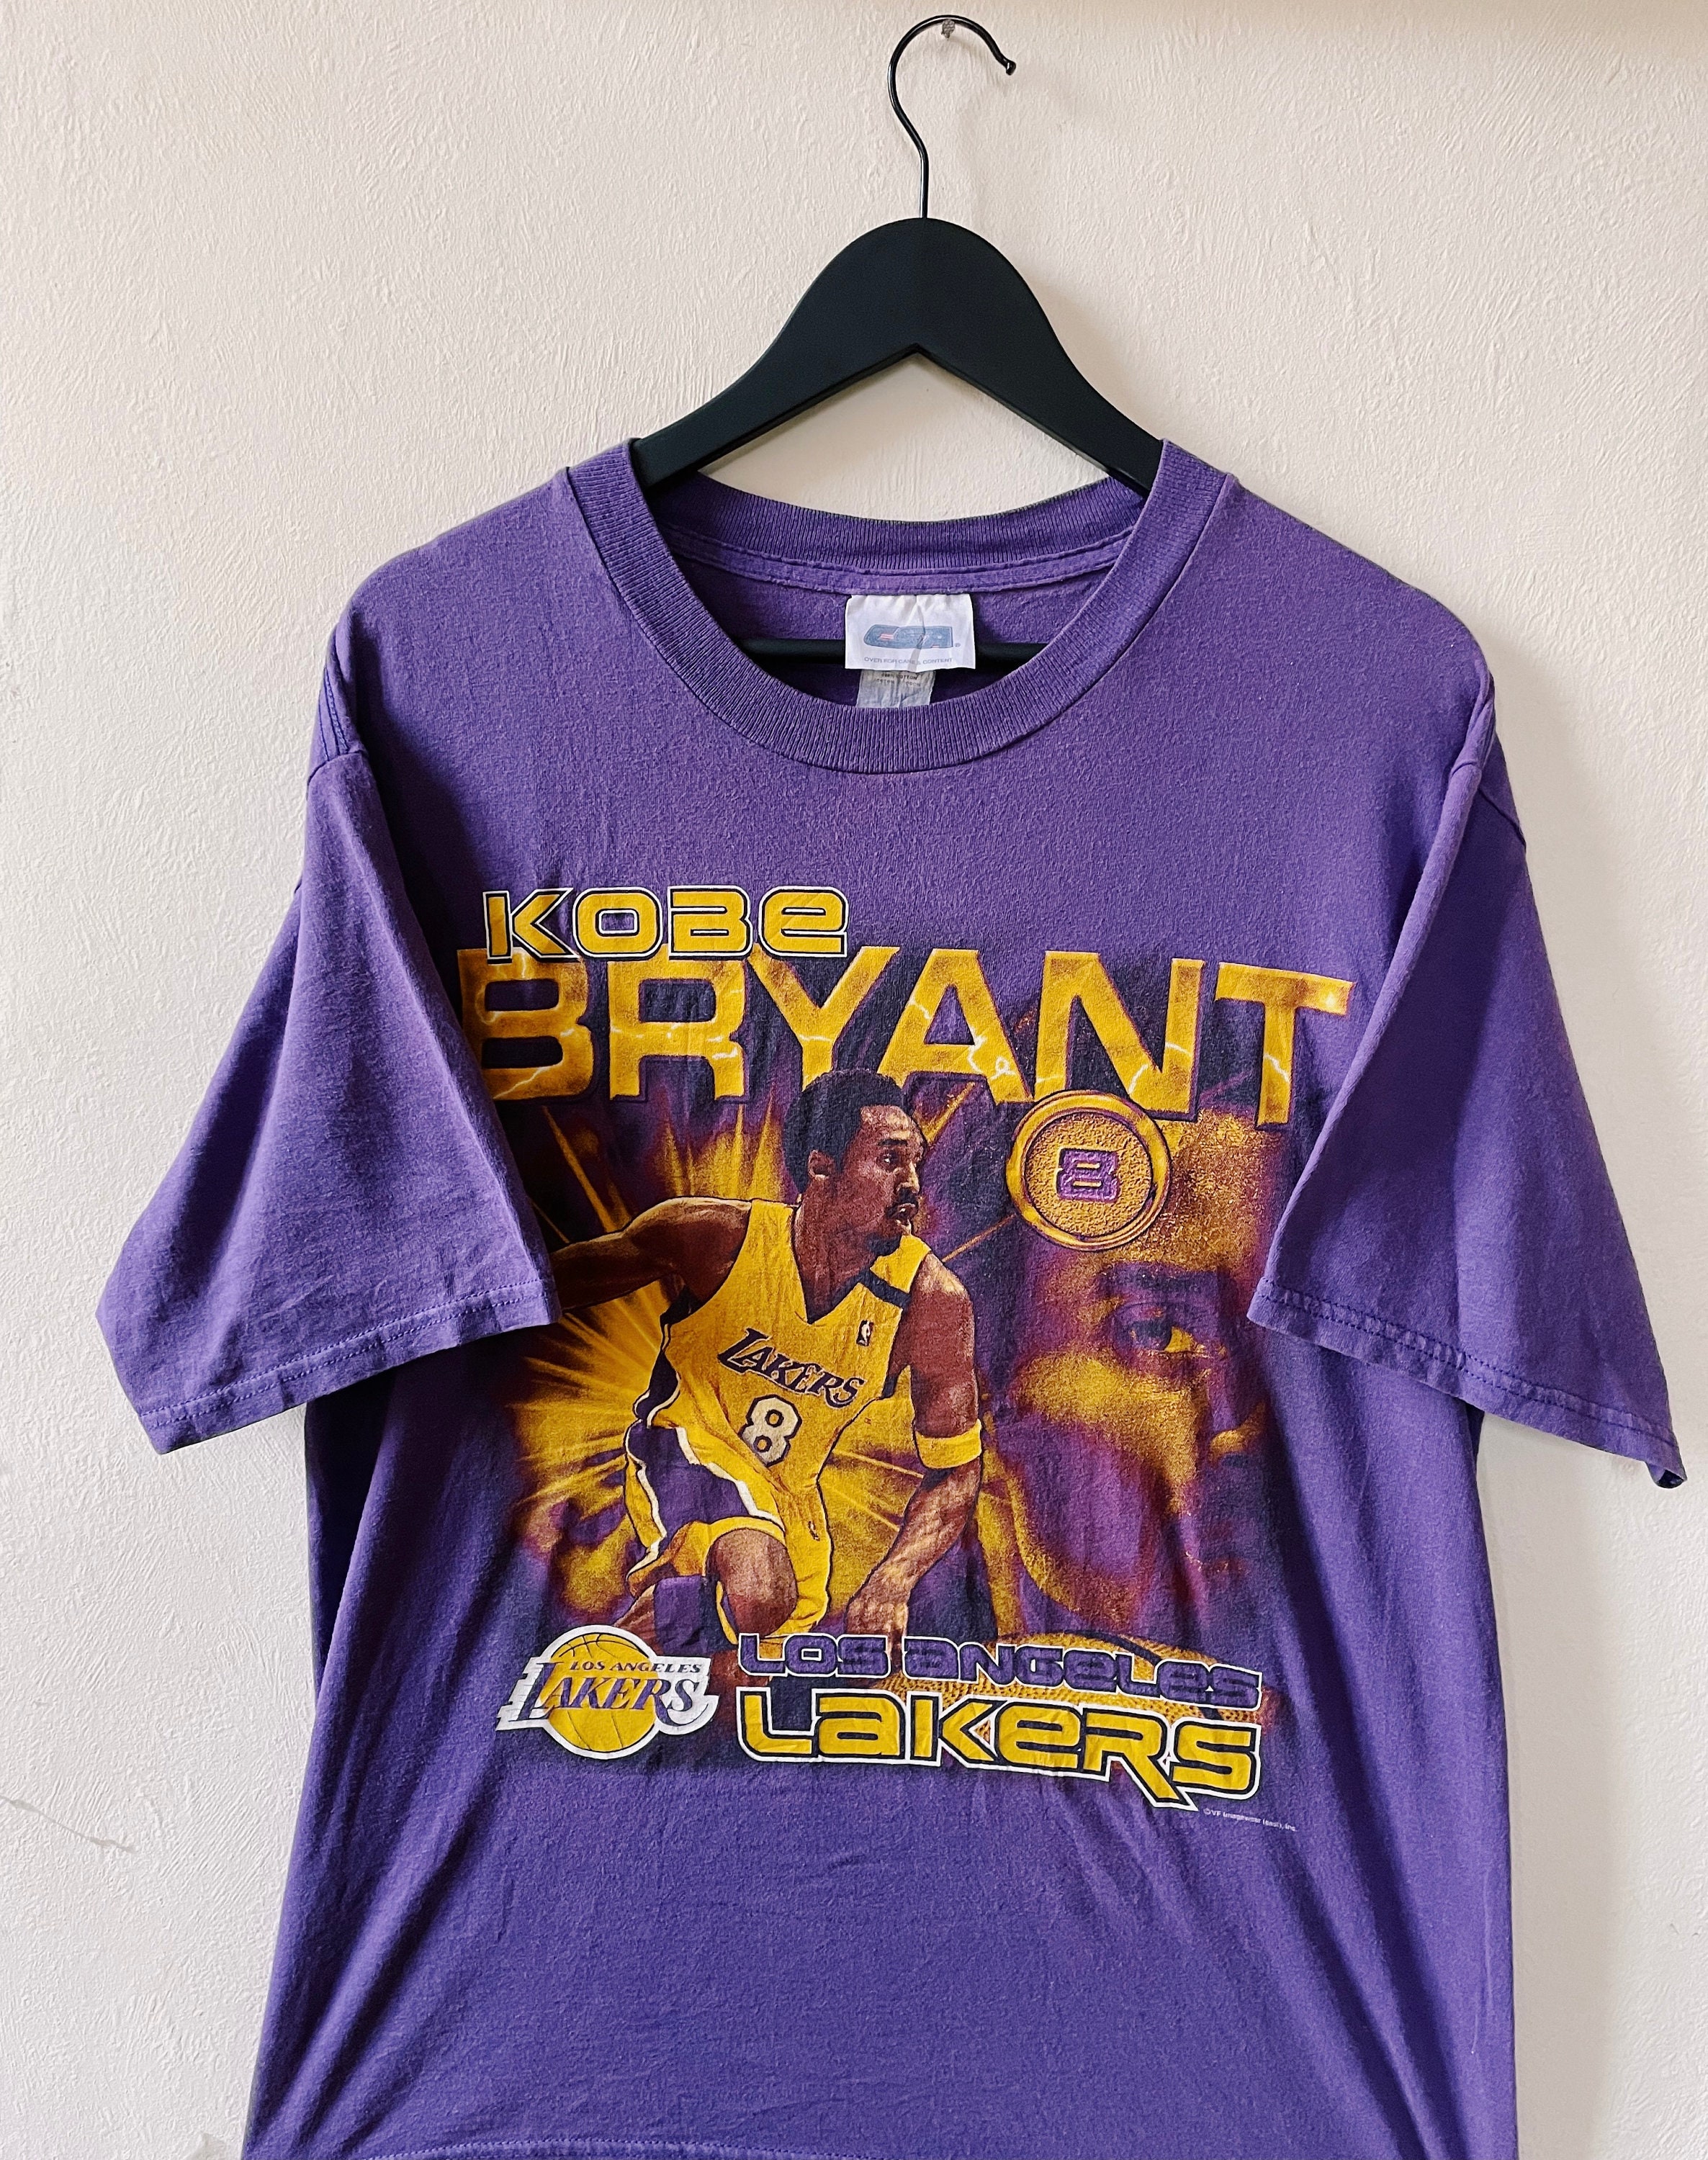 Kobe Bryant Graphic Shirt Adult Small Black NBA Los Angles Lakers Short  Sleeve